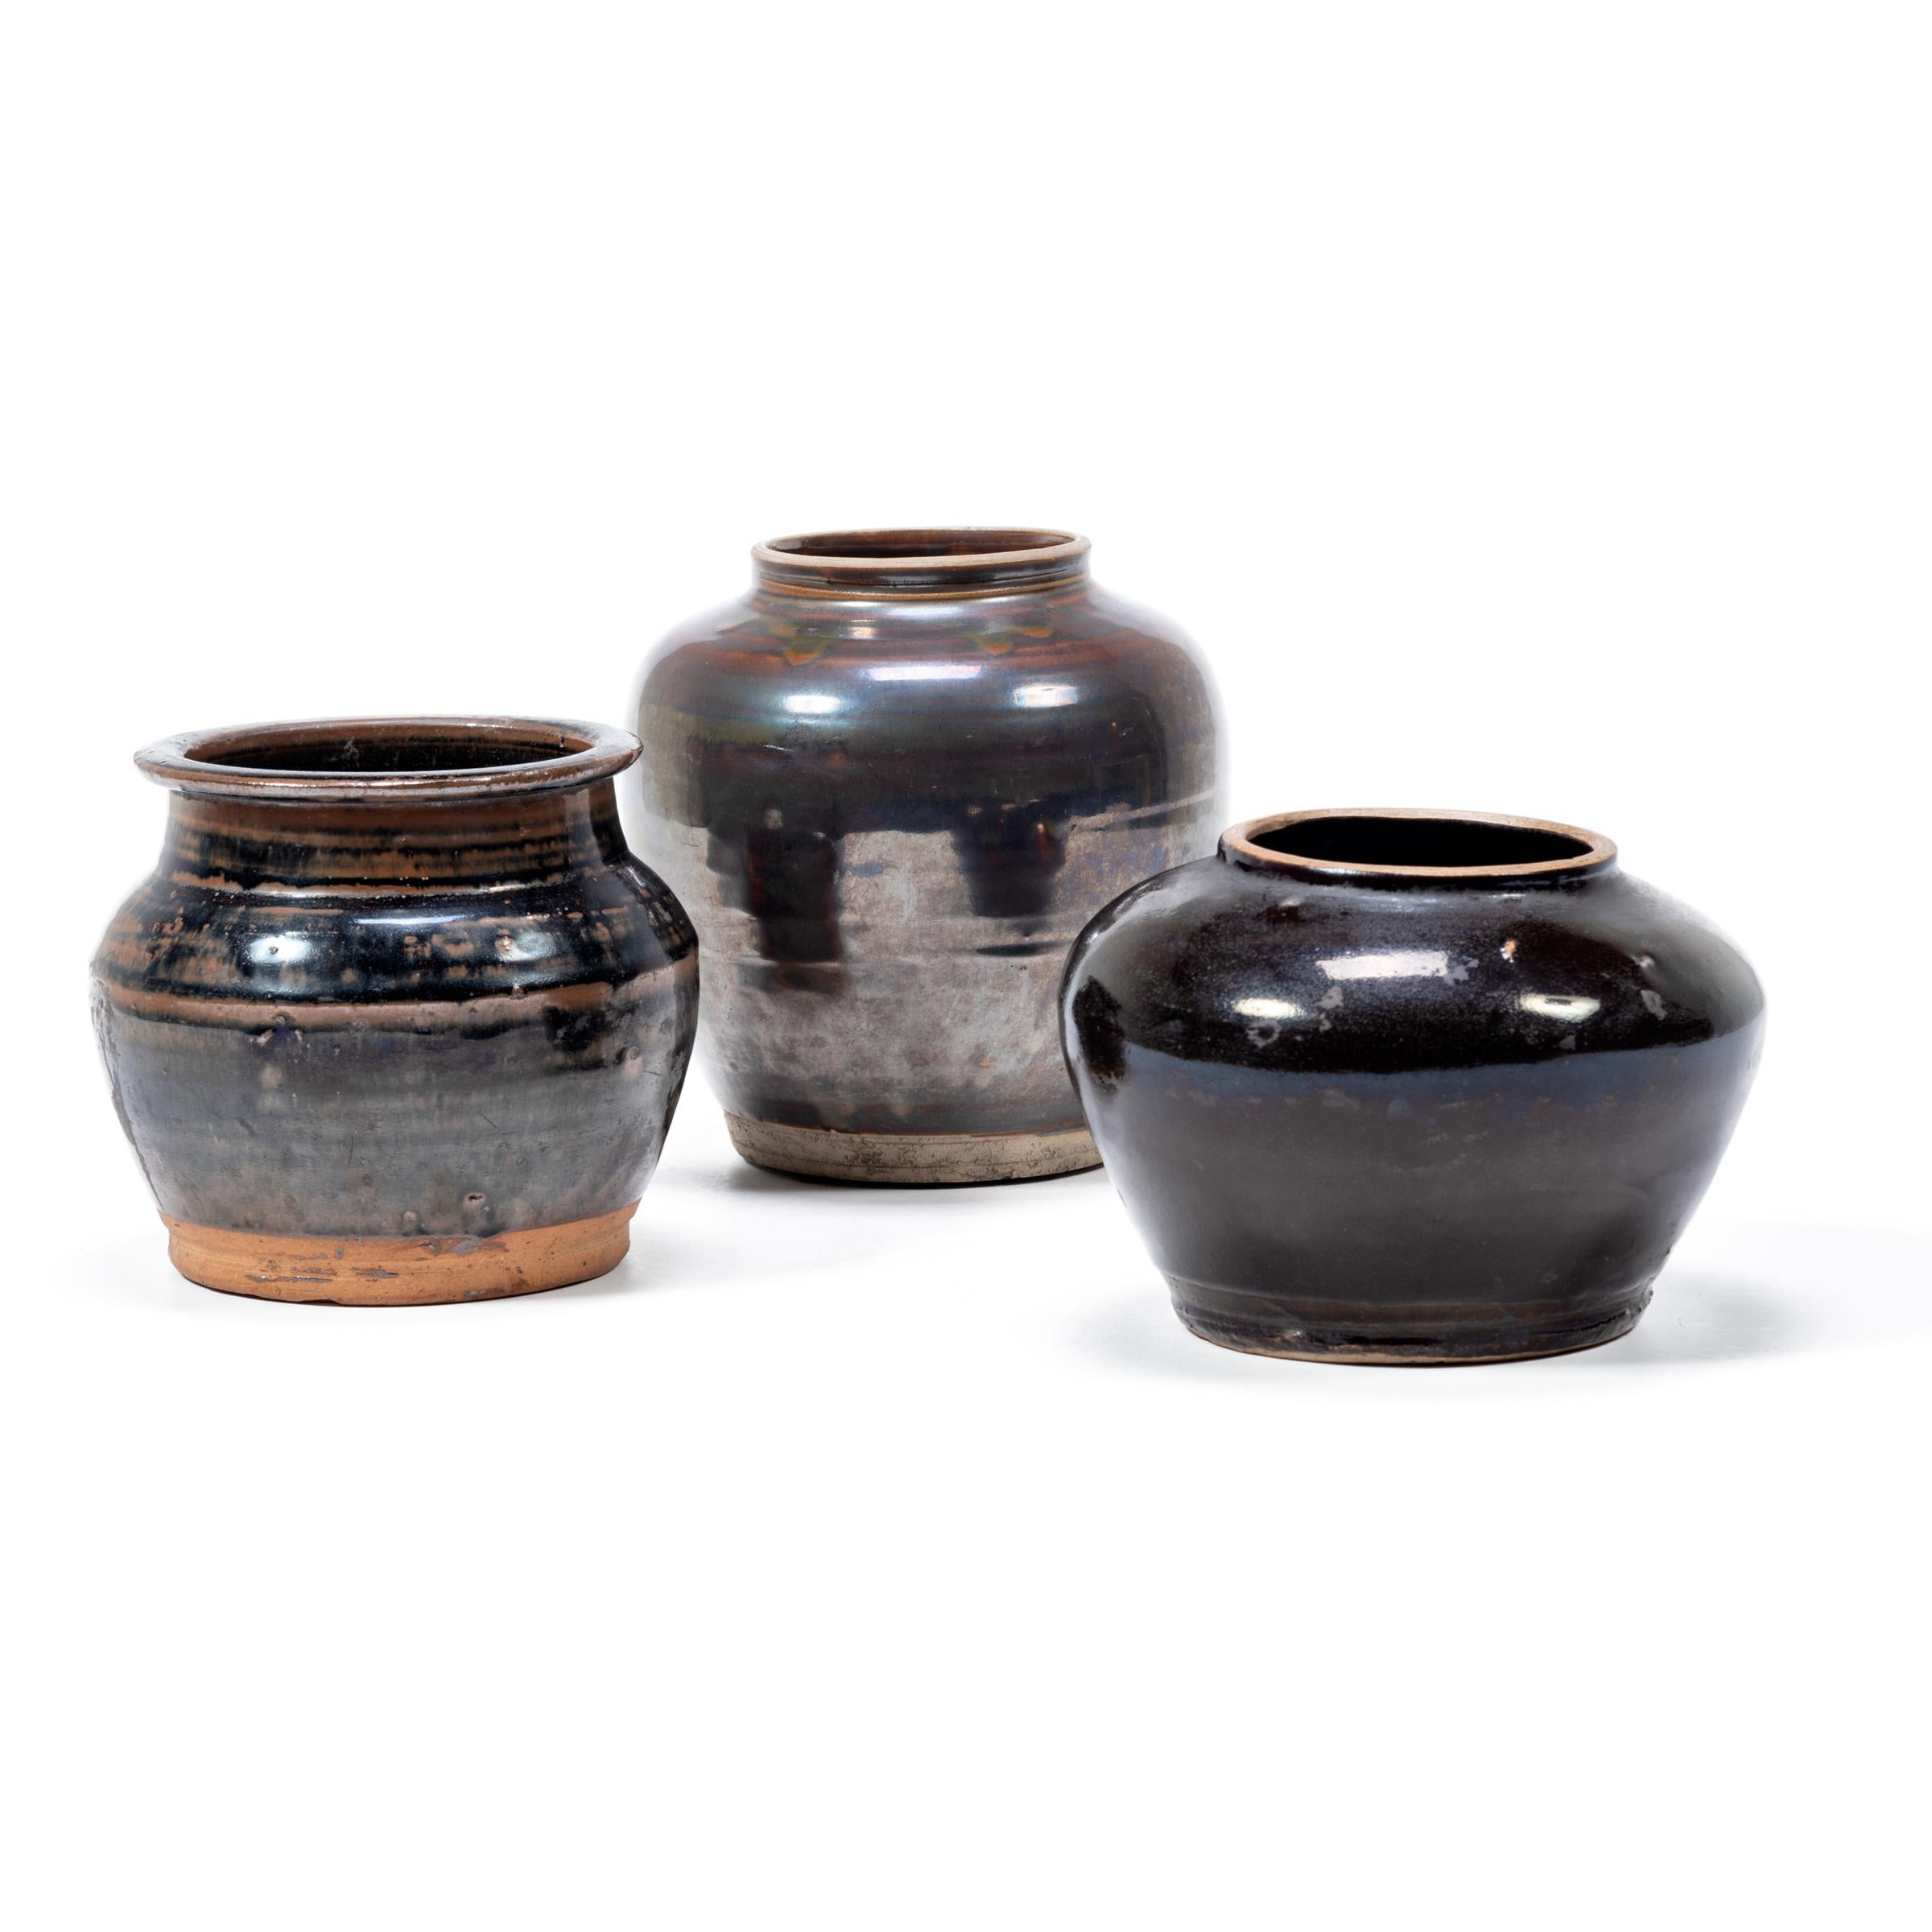 Ceramic Chinese Dark Glazed Kitchen Jar, circa 1900